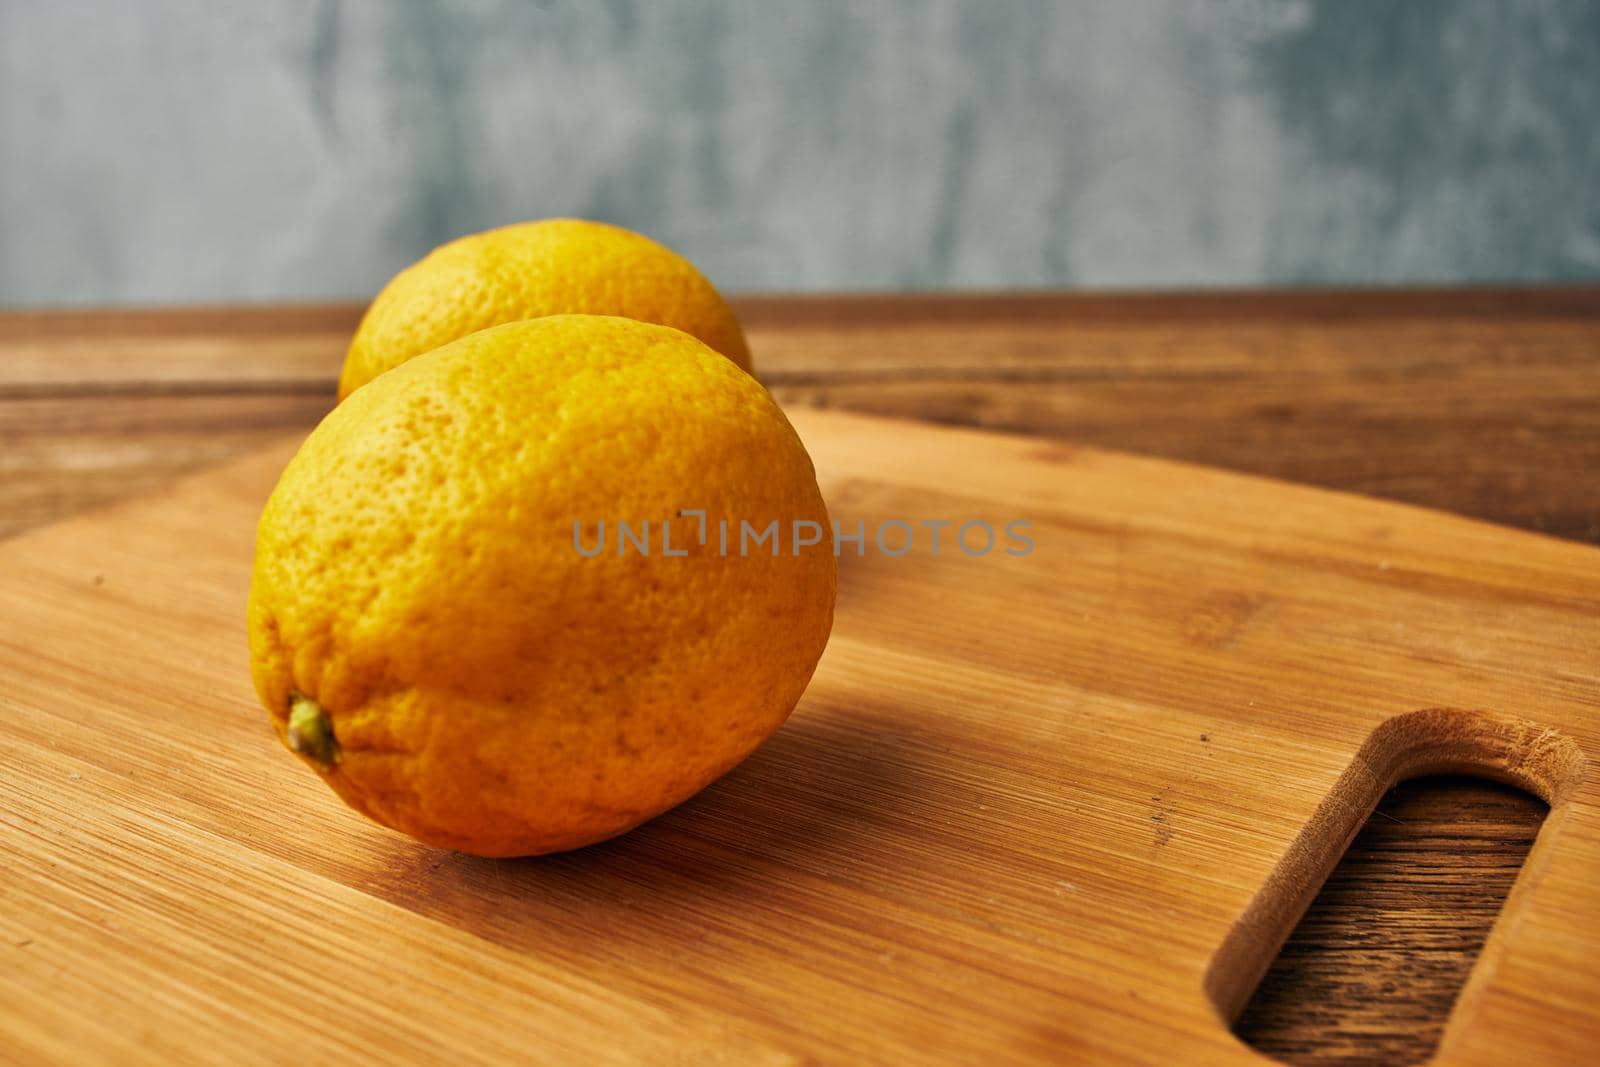 yellow lemon cutting board kitchen fresh food by Vichizh